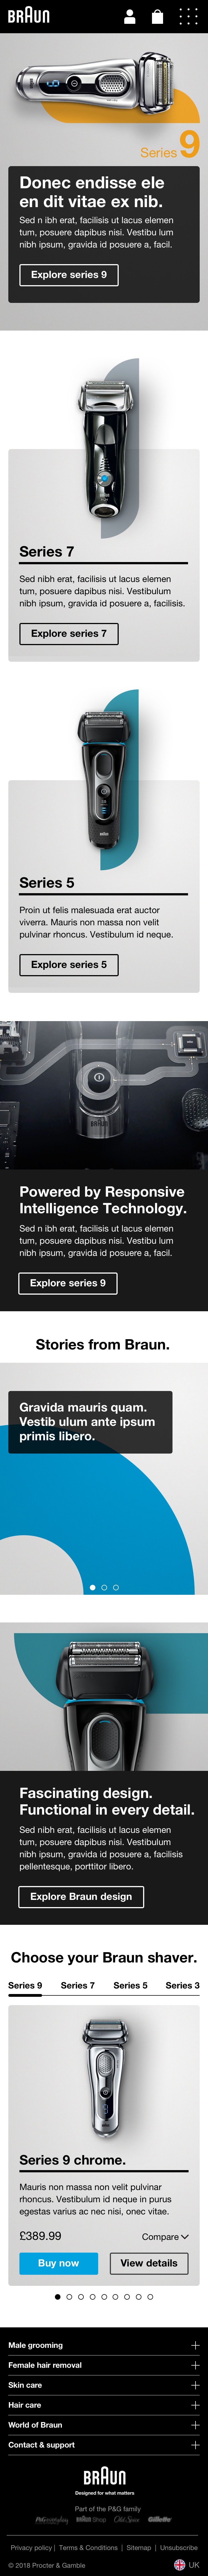 Braun website